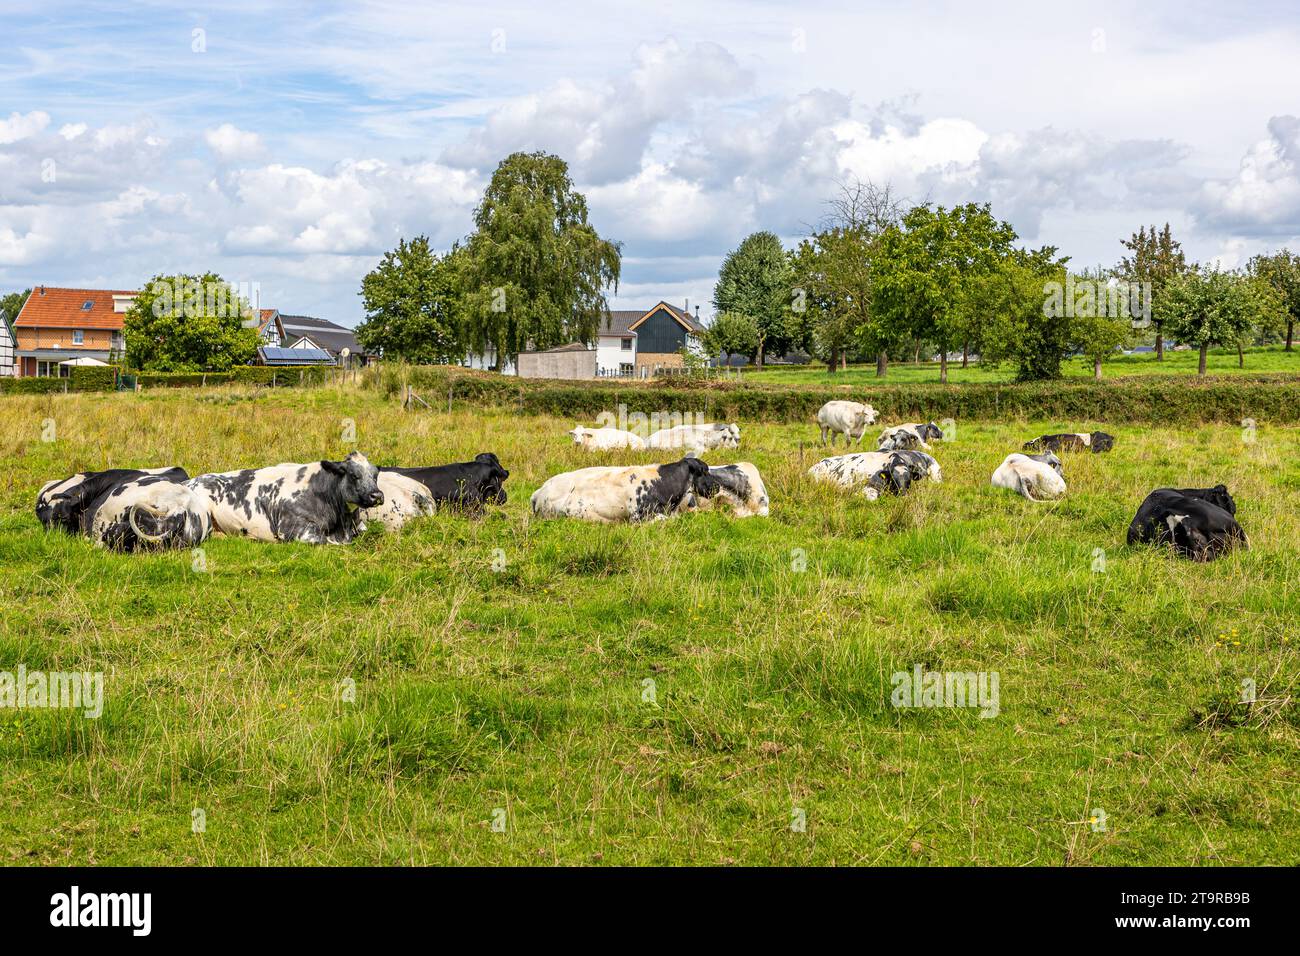 Parcella con un gruppo di vacche con pellicce bianche e nere adagiate su prati verdi, paesaggio agricolo del bestiame olandese, fattorie e alberi su fondo sfocato, Foto Stock